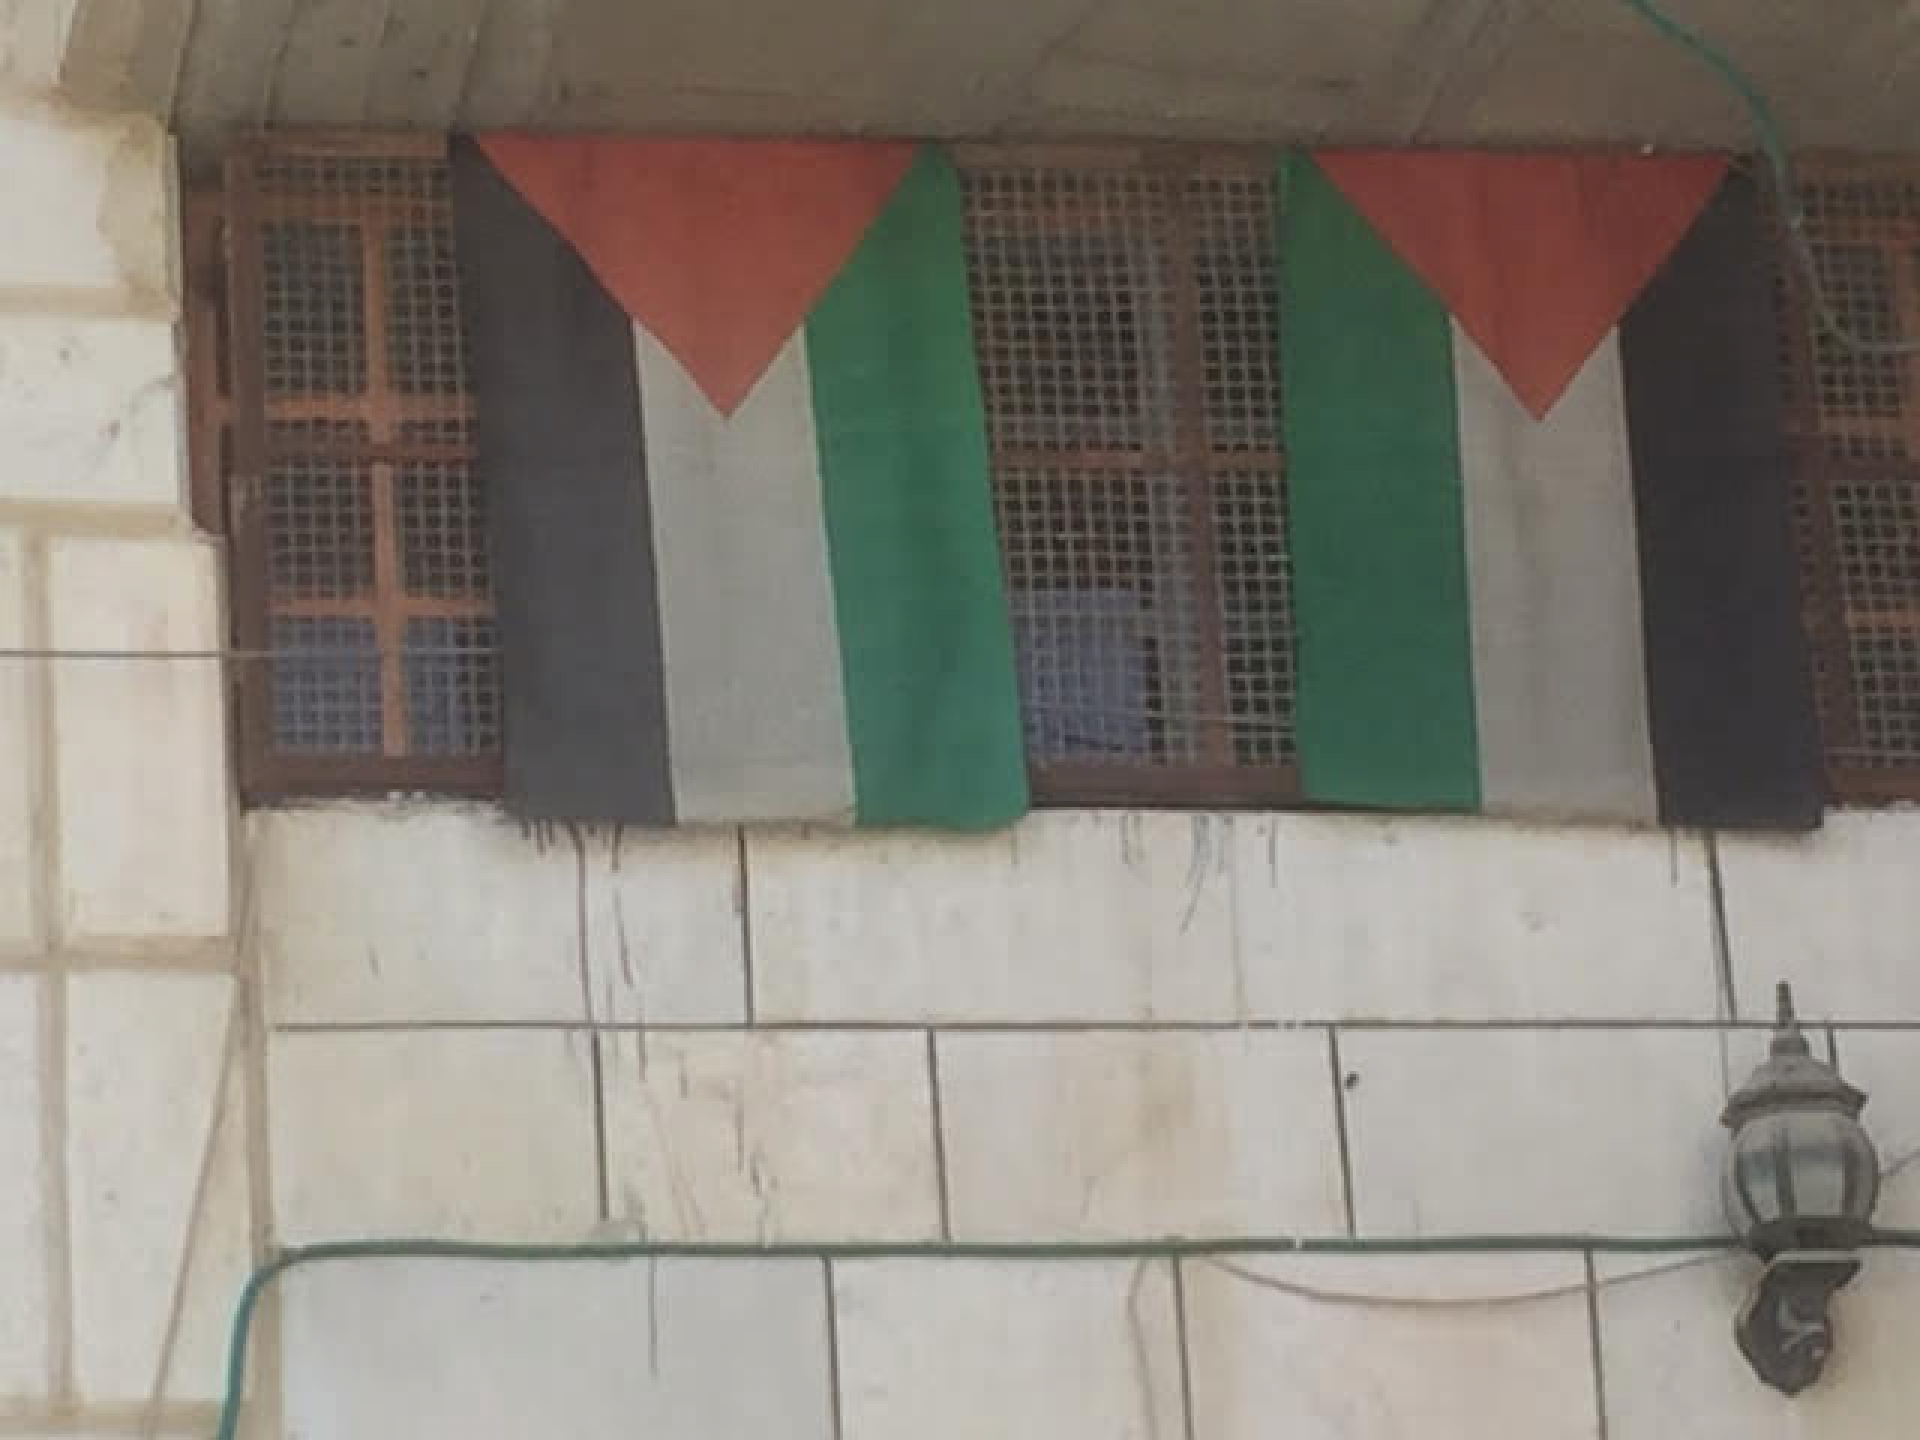 הדירות בבית המכפלה השייכות לפלסטינים